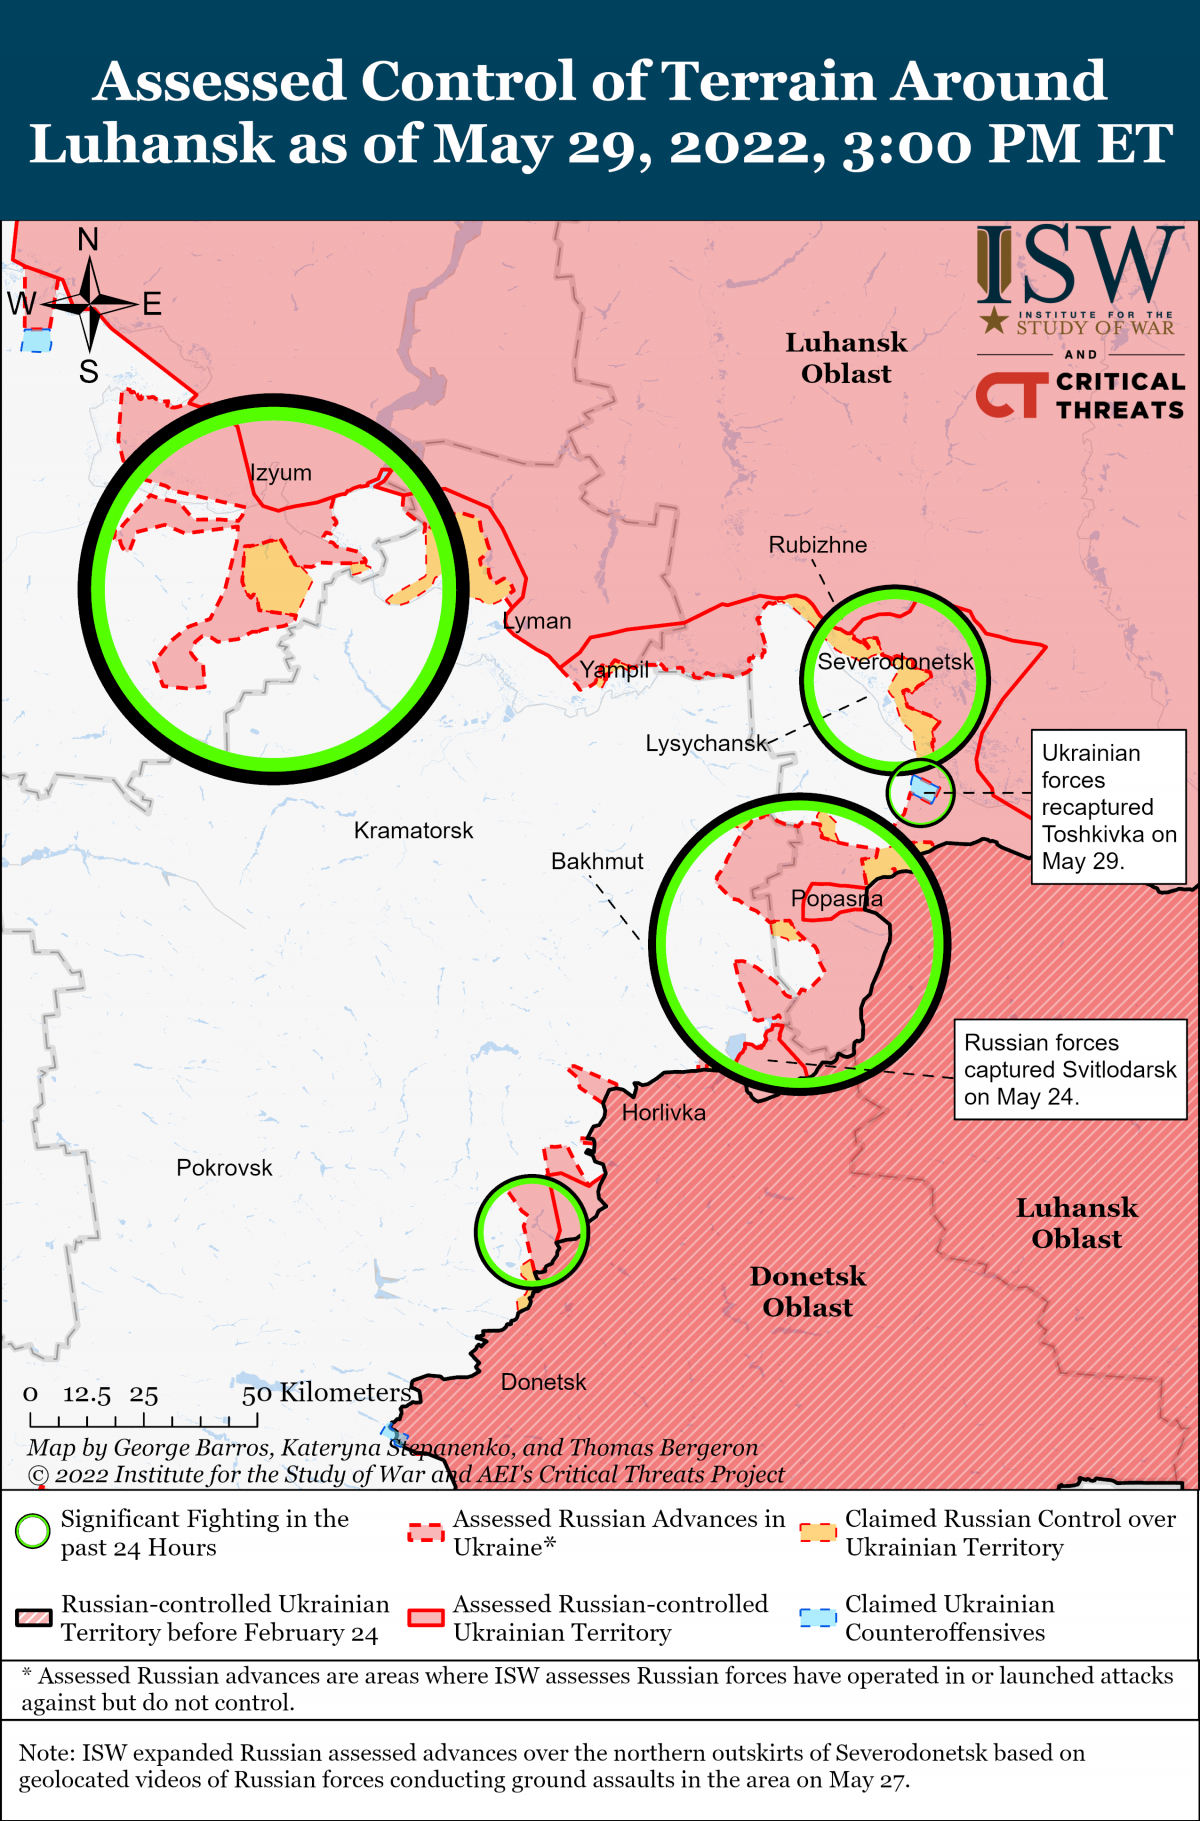 Российские войска продолжили наземный штурм Северодонецка, но ISW не может подтвердить никаких конкретных достижений